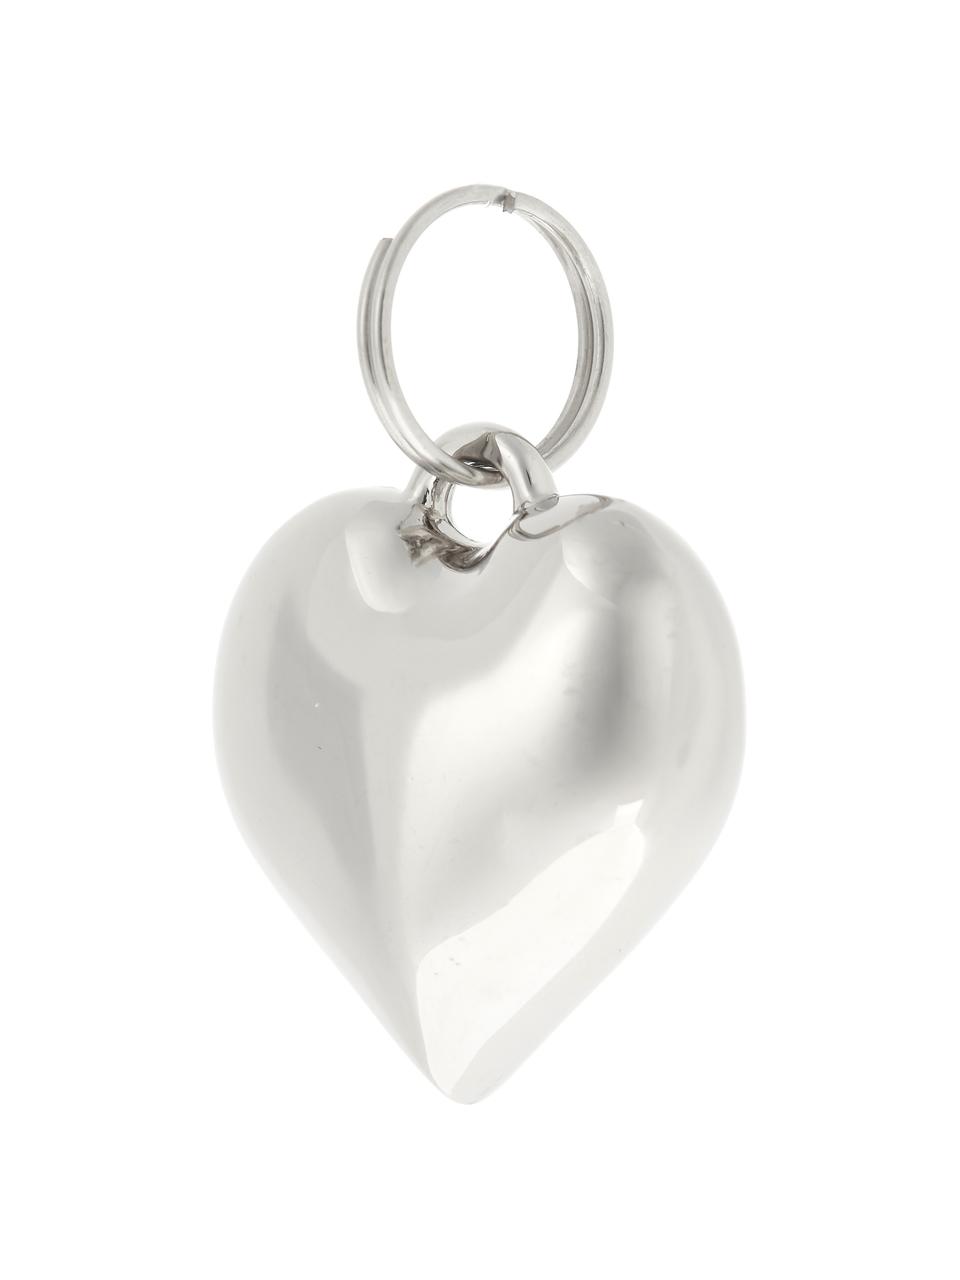 Geschenklabels Charm Heart, 6 stuks, Metaal, Zilverkleurig, Ø 2 cm, H 3 cm